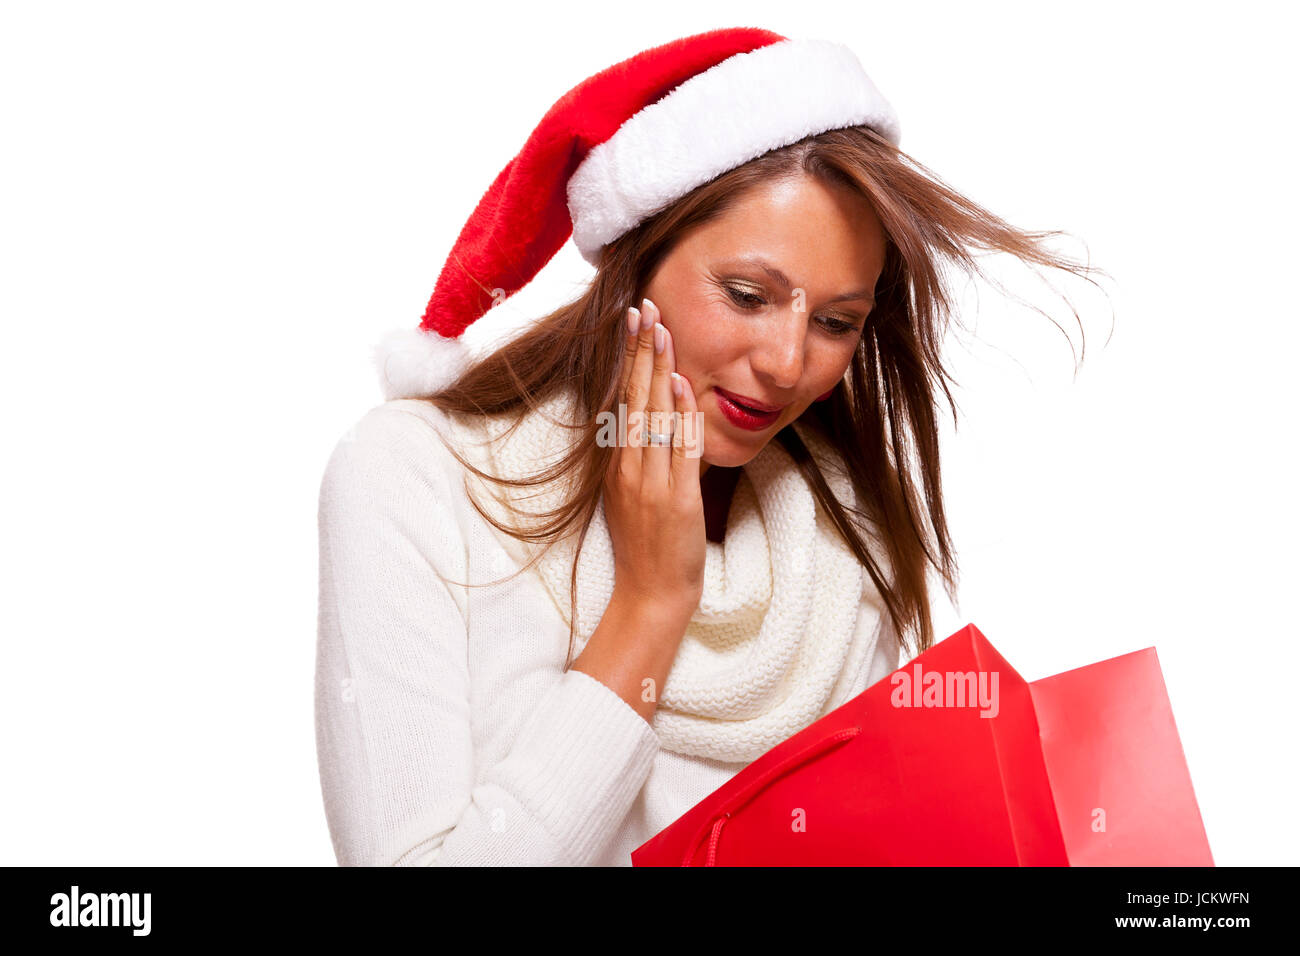 Attraktive junge Frau mit Nikolausmütze hält lachend eine rote Einkaufstasche Sale Schlussverkauf in der Hand auf weißem Hintergrund mit Textfreiraum Isoliert Freisteller Stock Photo